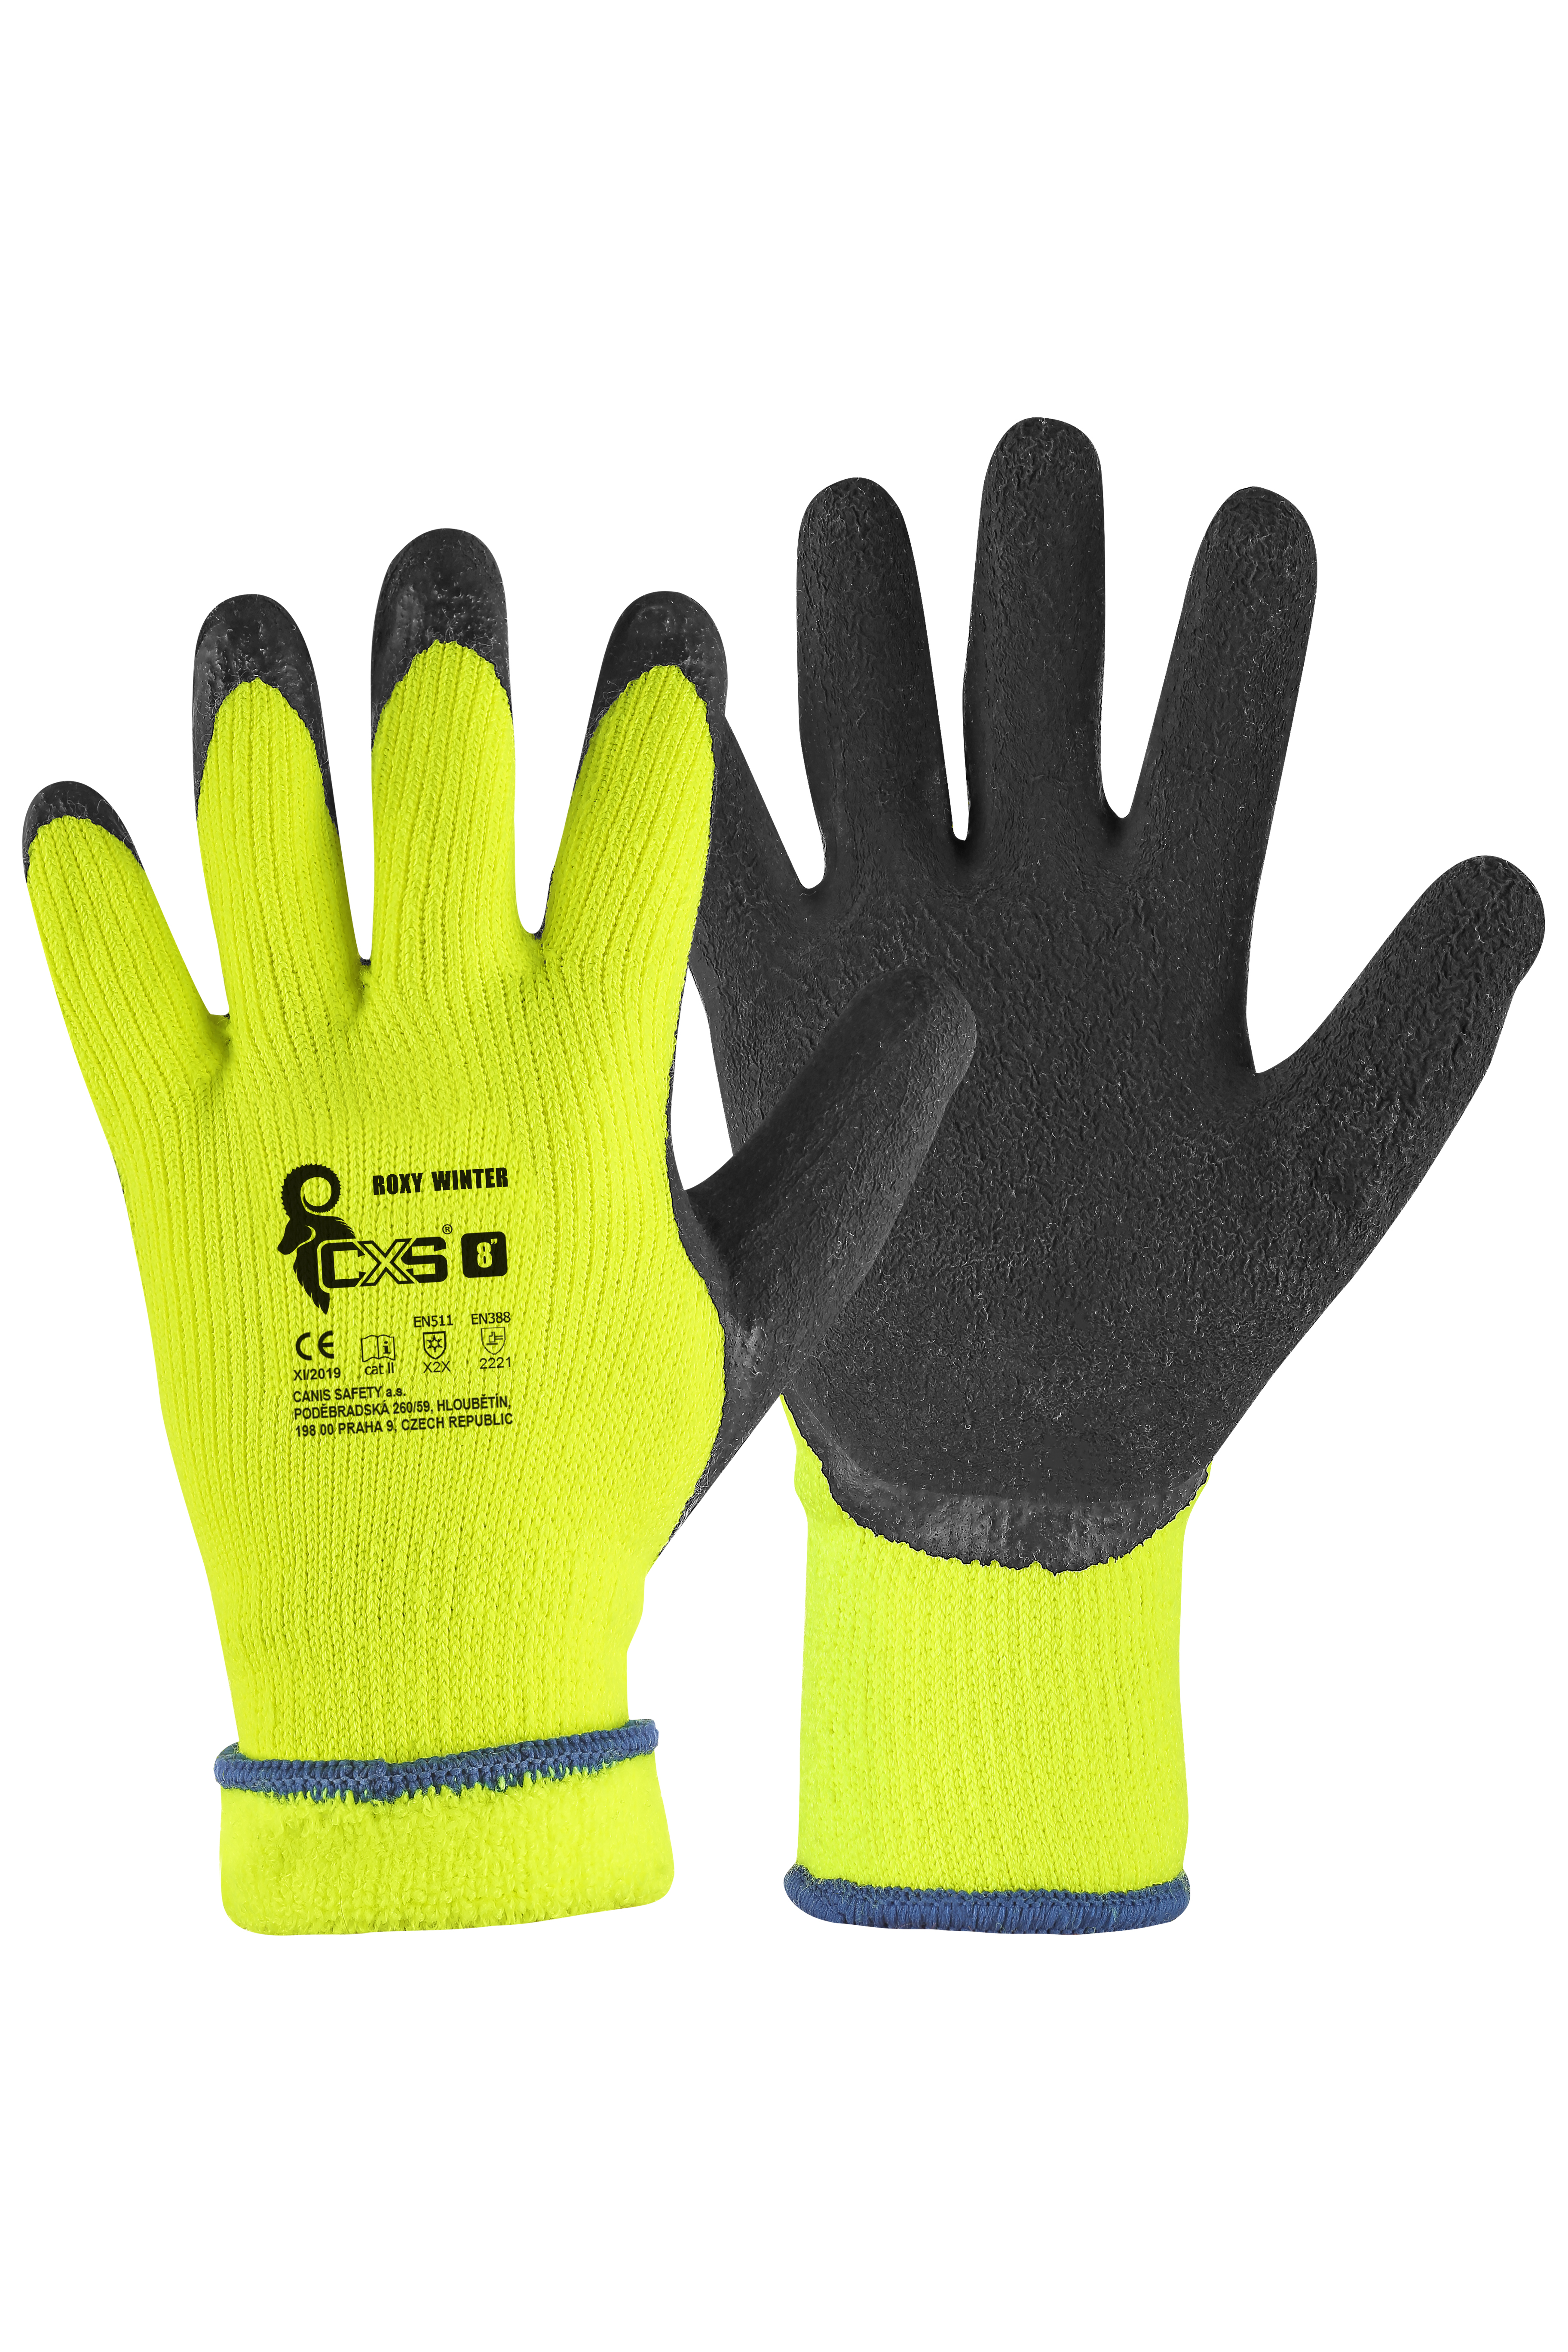 rukavice Roxy Winter, zimní, máčené v latexu, velikost 10 0.11 Kg TOP Sklad4 606069 454